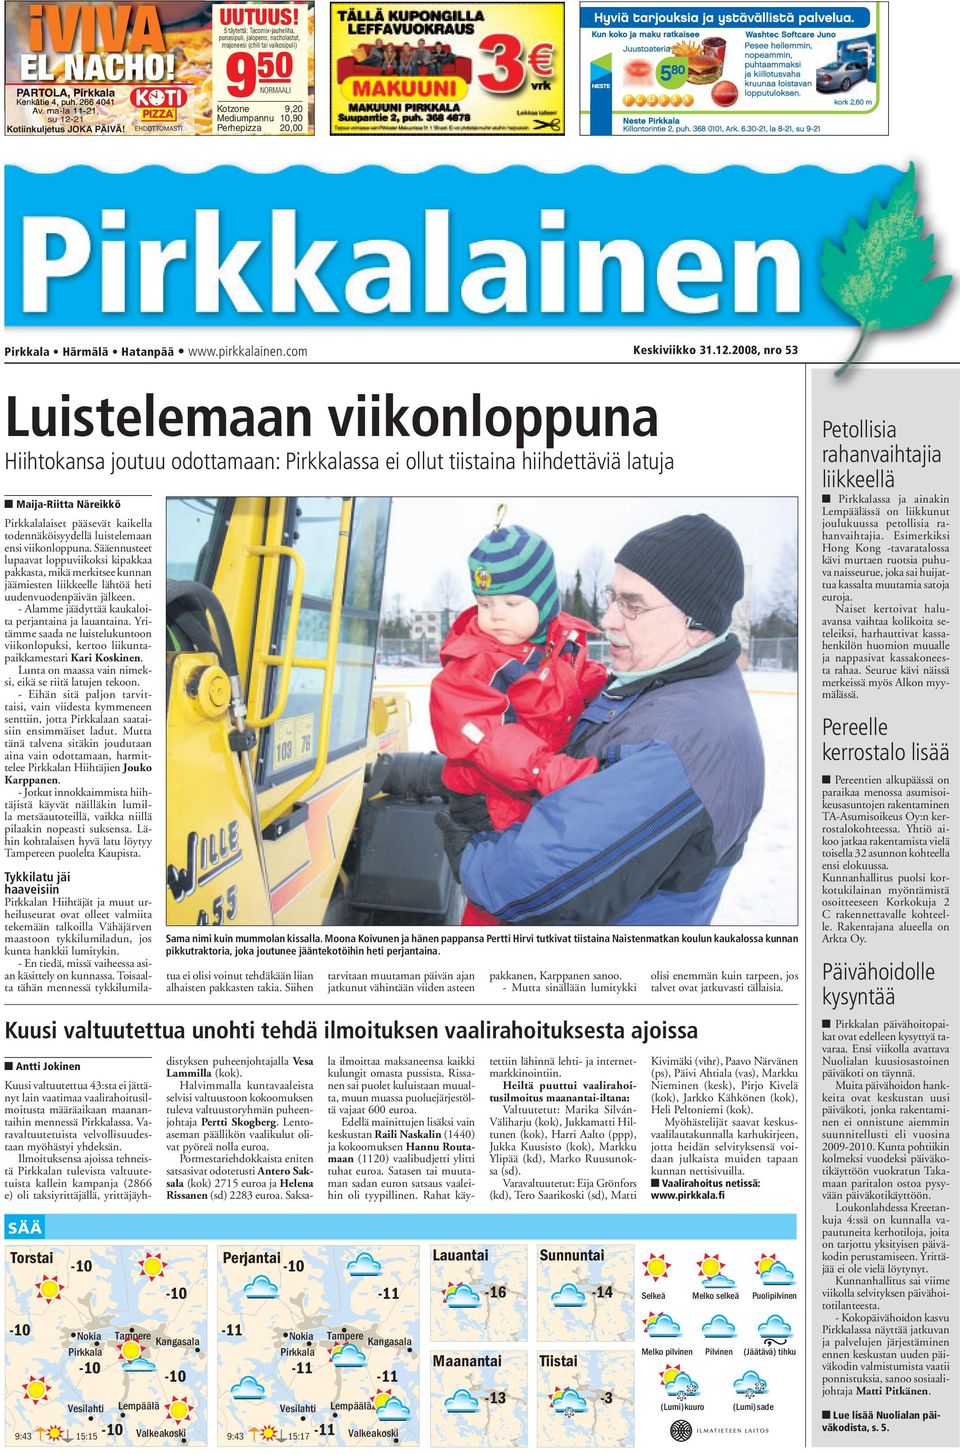 pirkkalainen.com Keskiviikko 31.12.